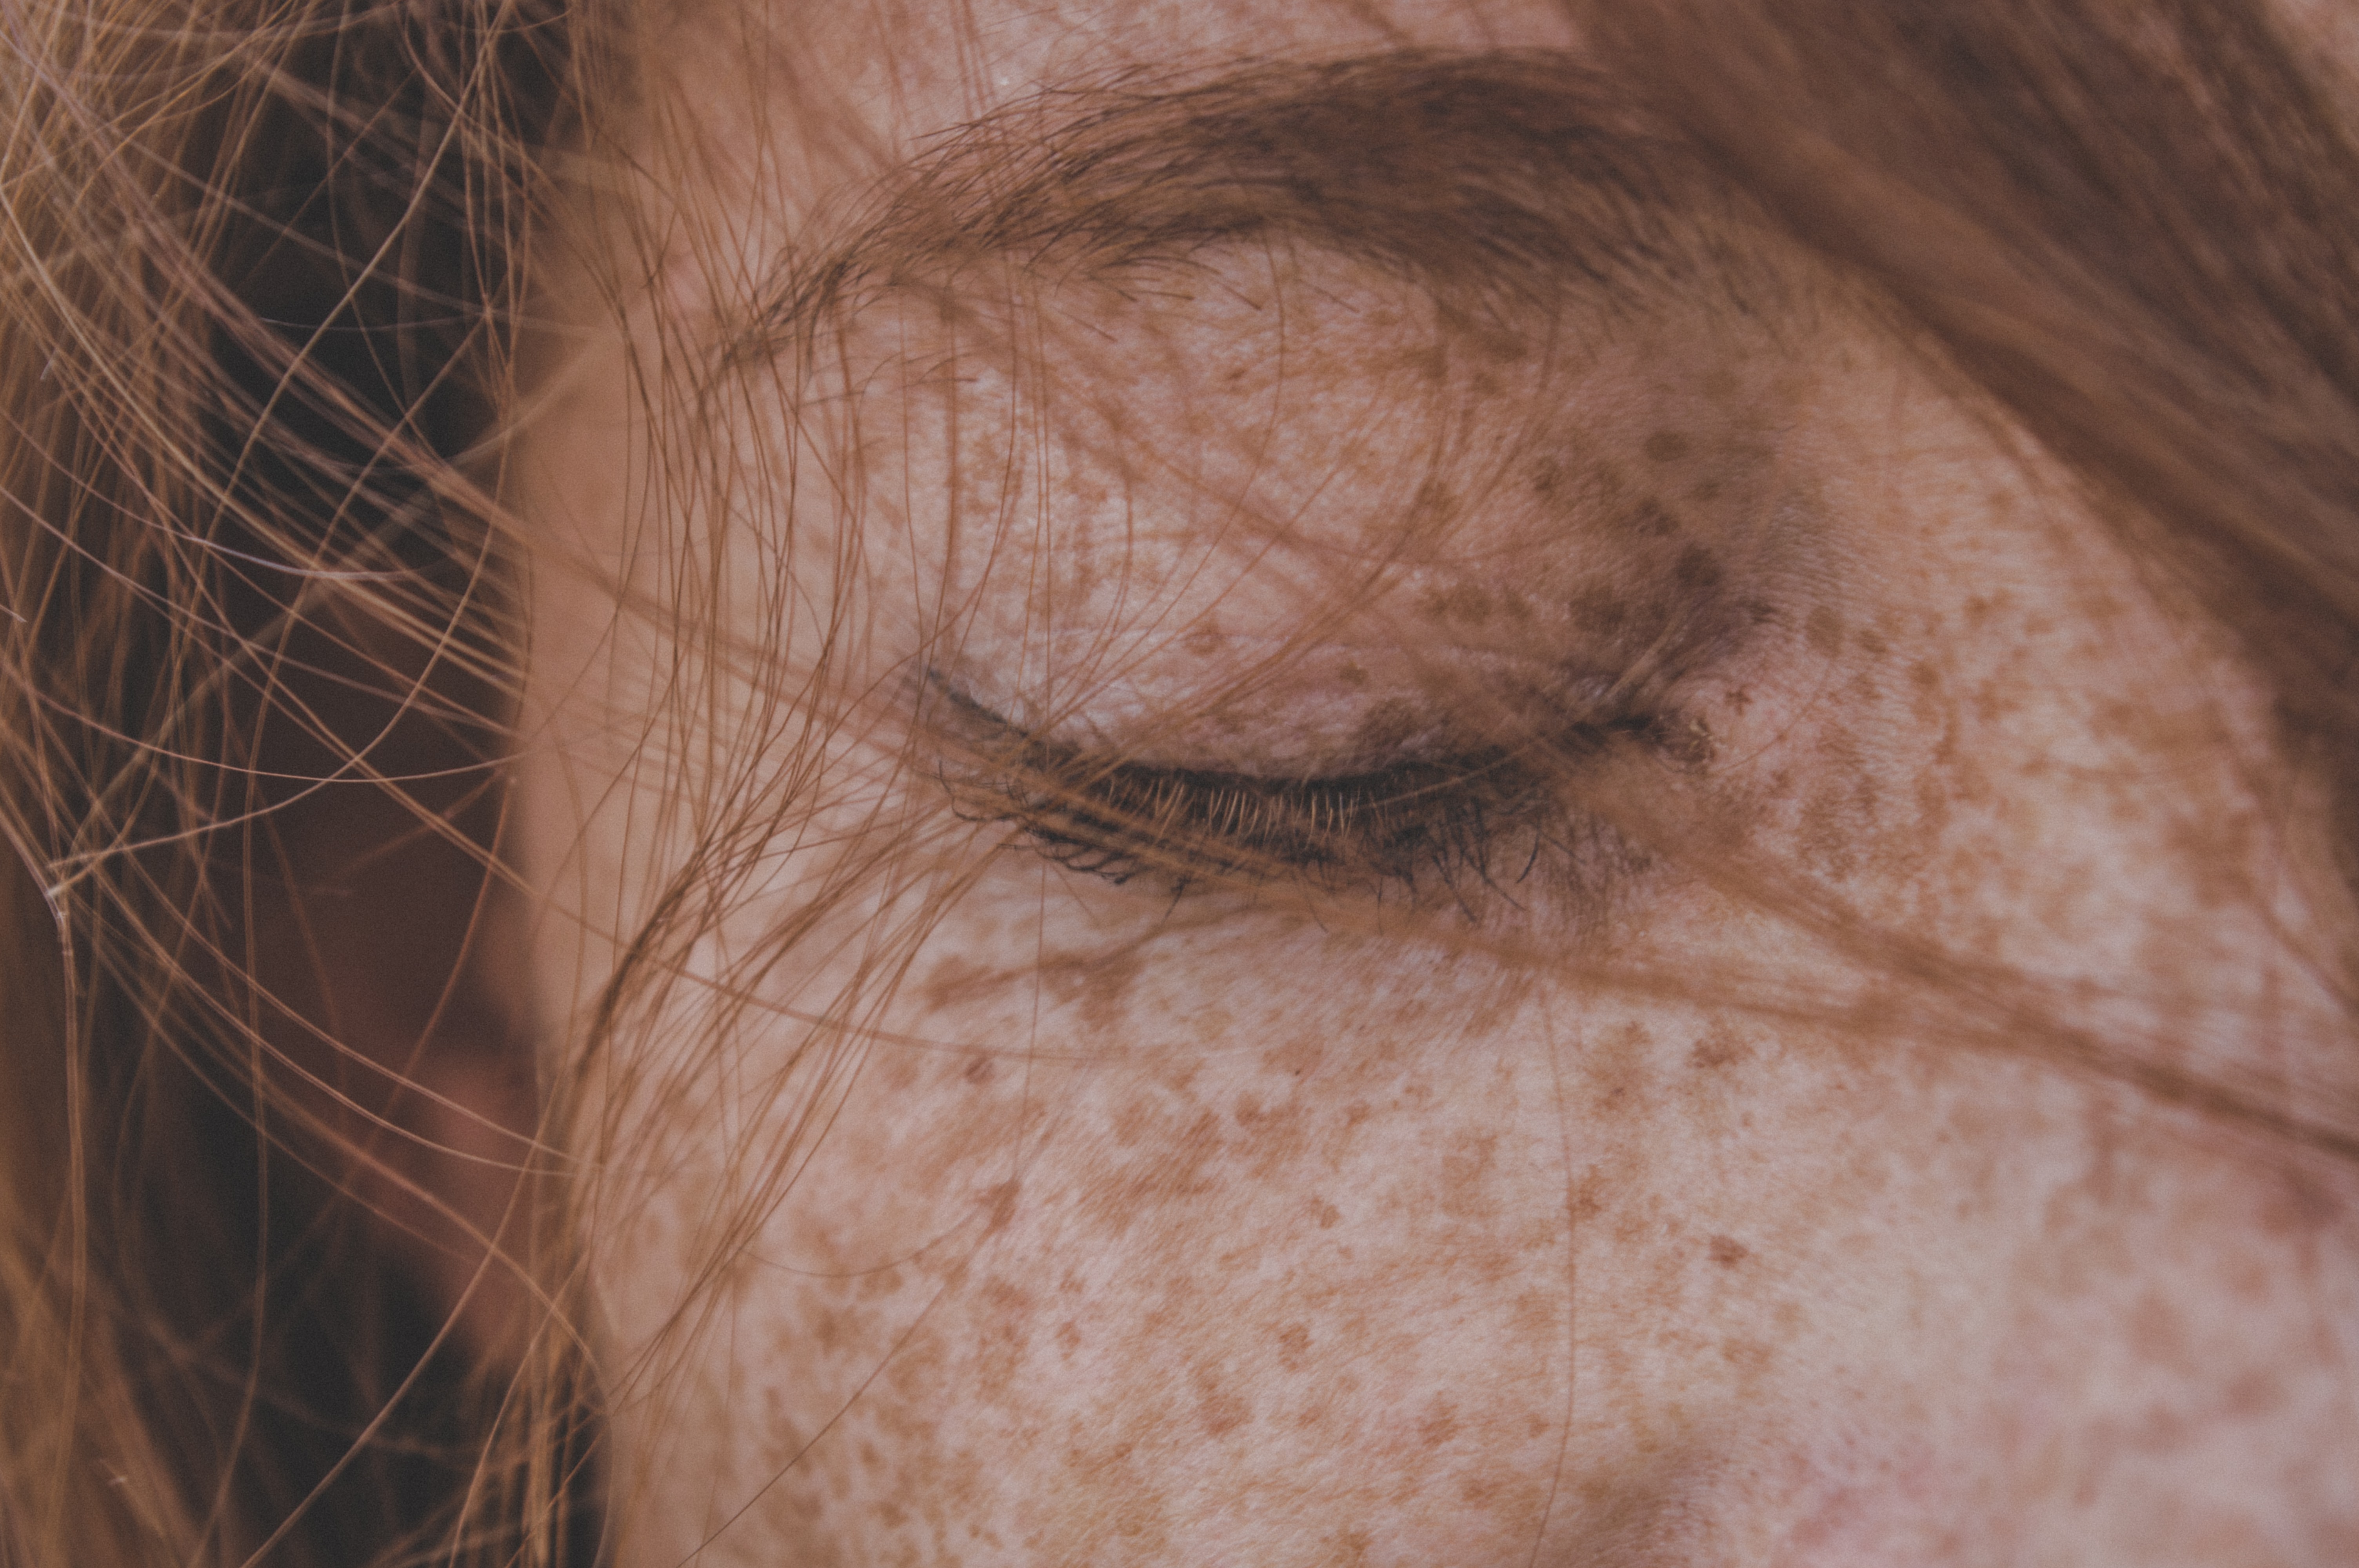 बदसूरत बनाने वाला रोग-लड़कियों के चेहरे पर बाल क्यों आ जाते हैं?